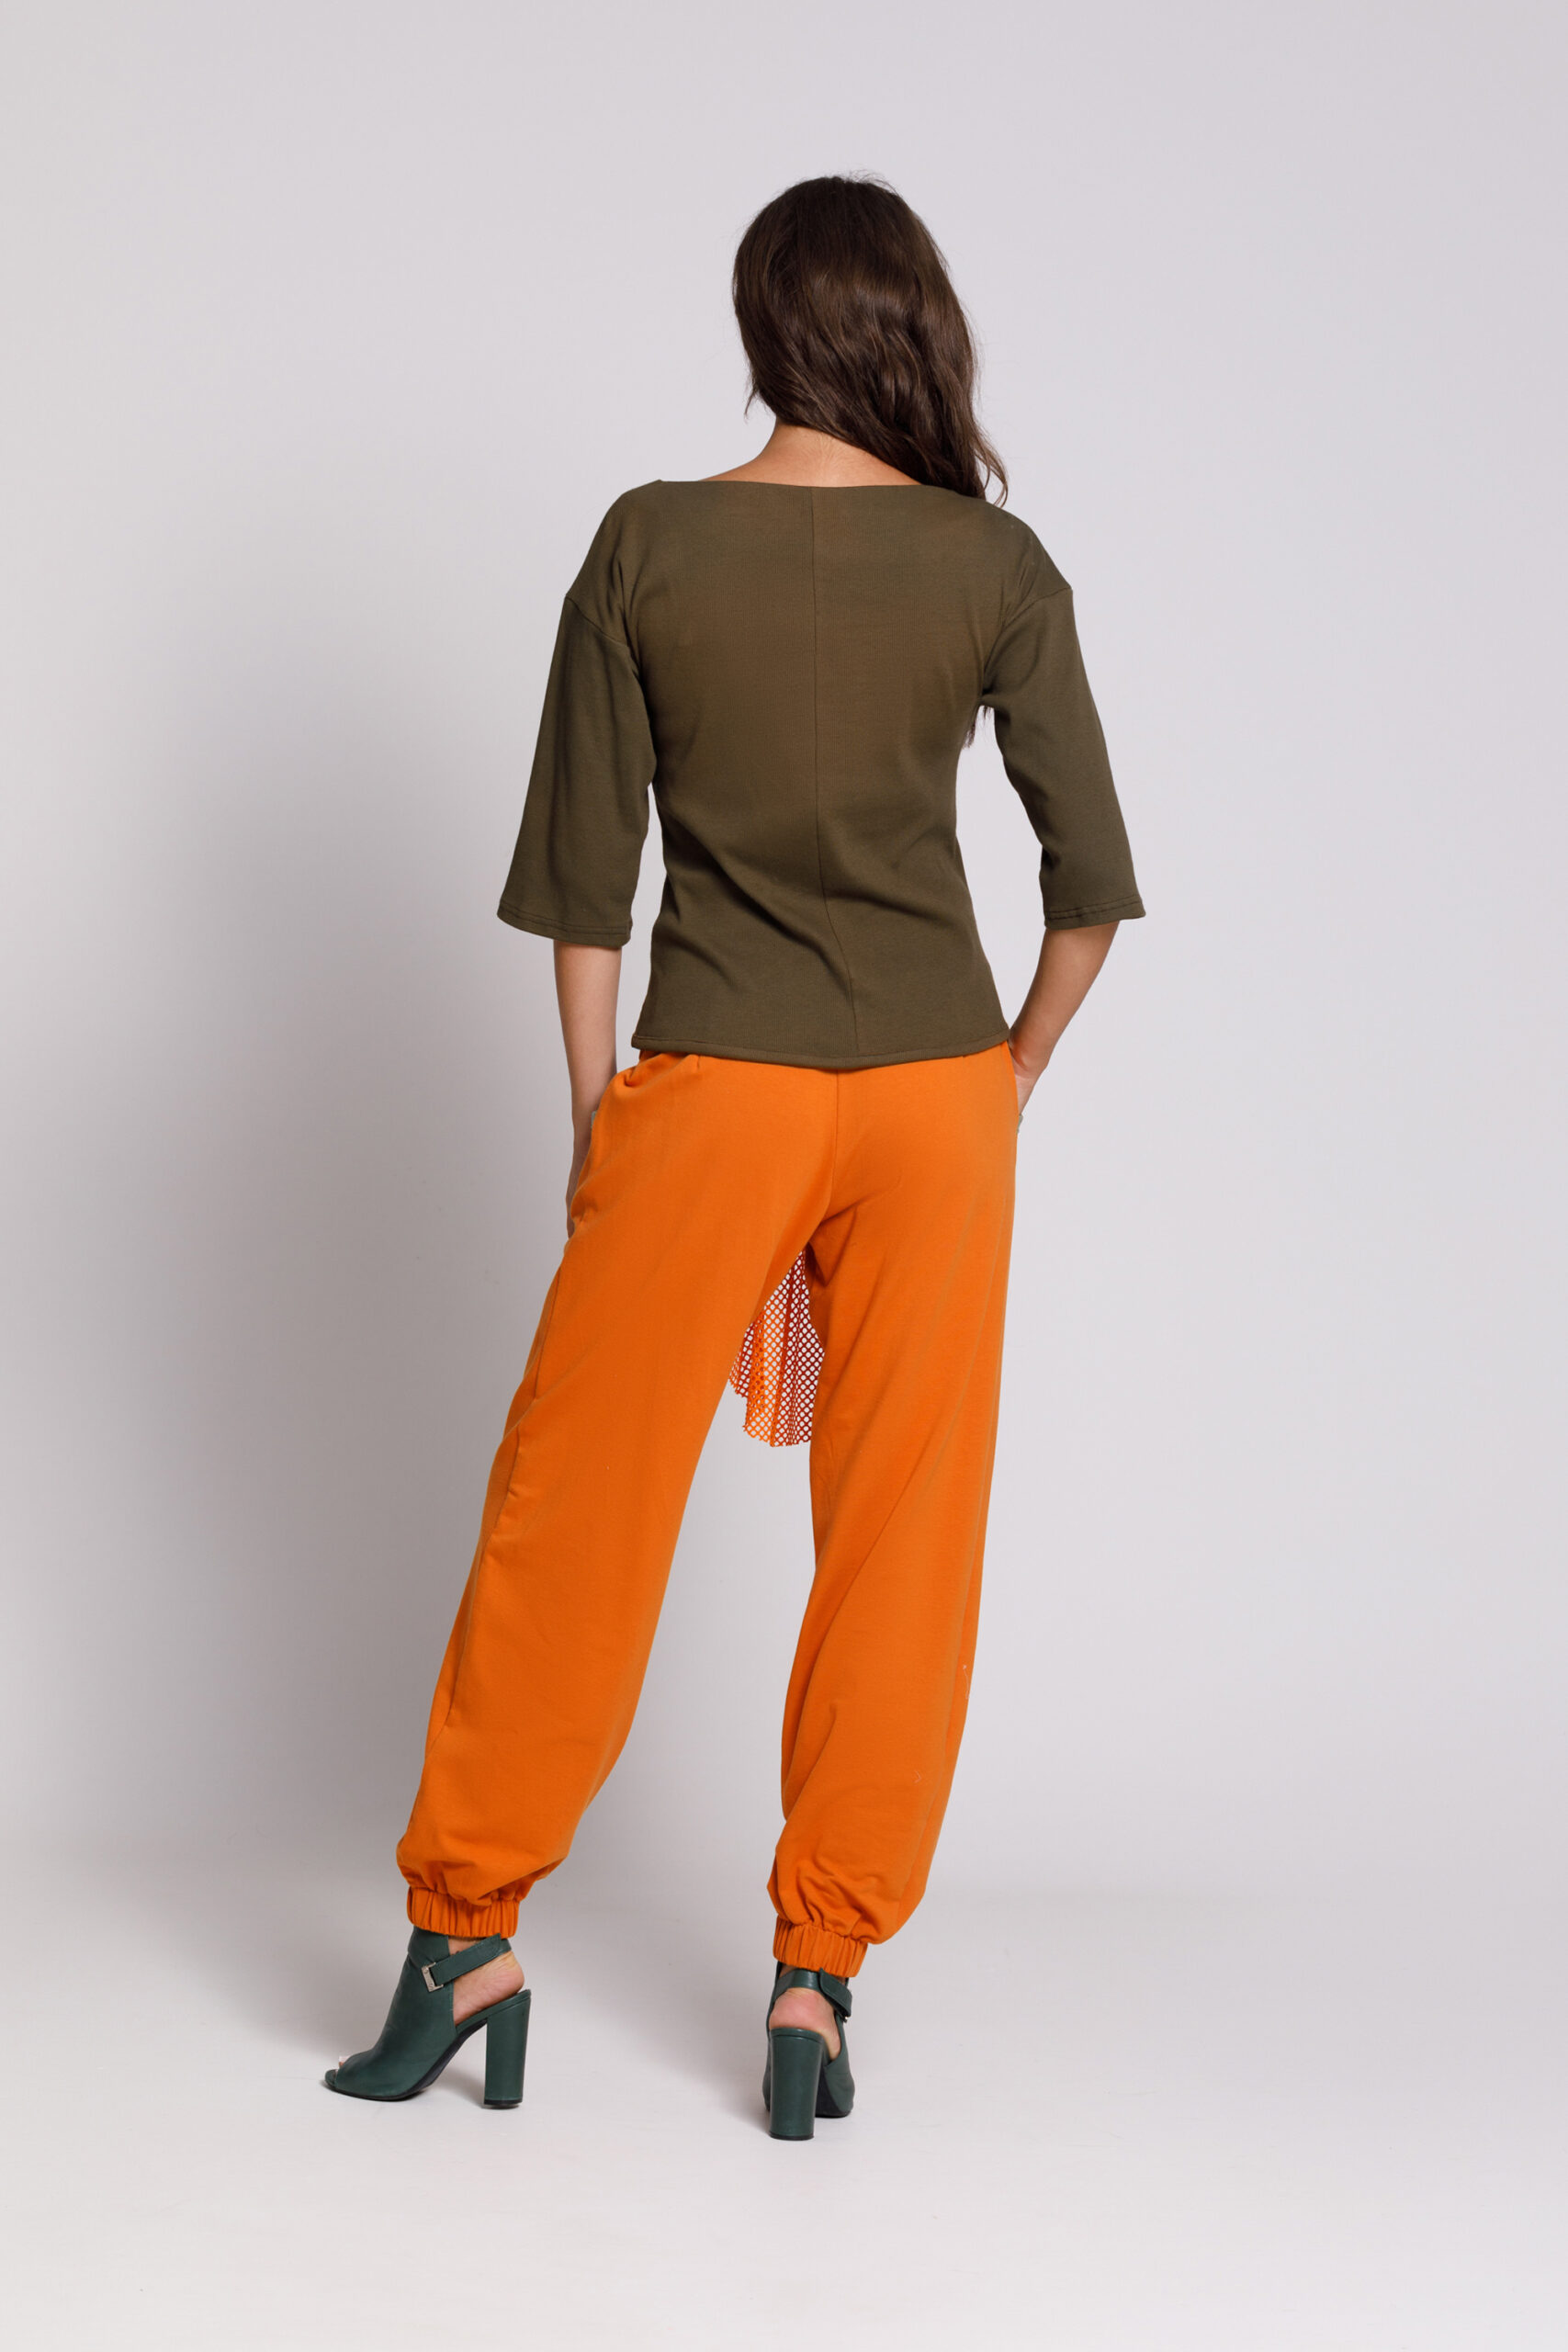 Pantalon OLARIS portocaliu din felpa. Materiale naturale, design unicat, cu broderie si aplicatii handmade